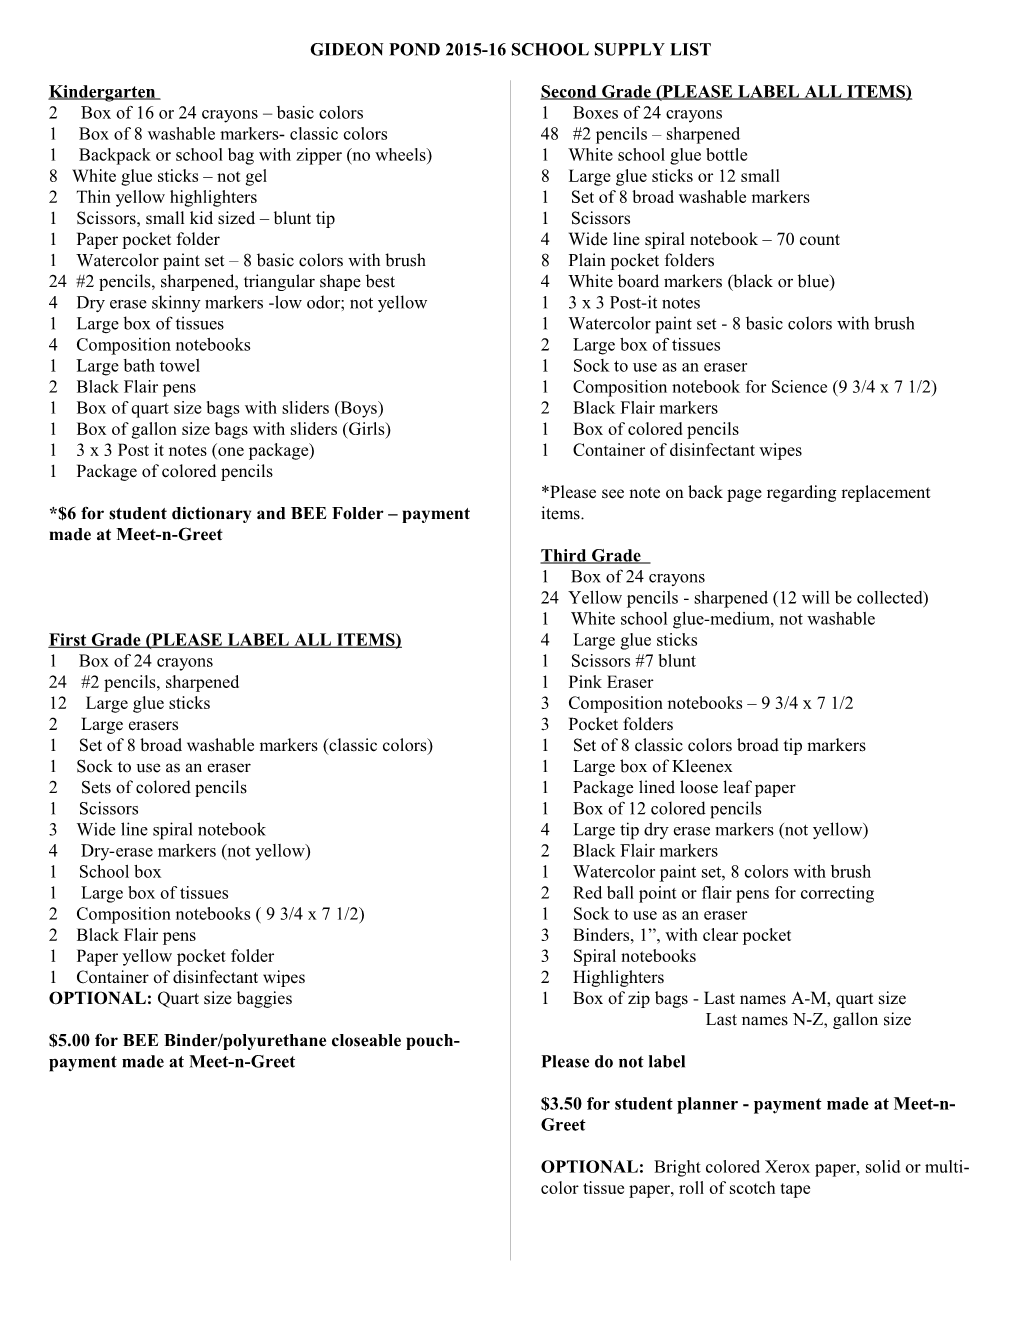 Gideon Pond 1999-2000 School Supply List